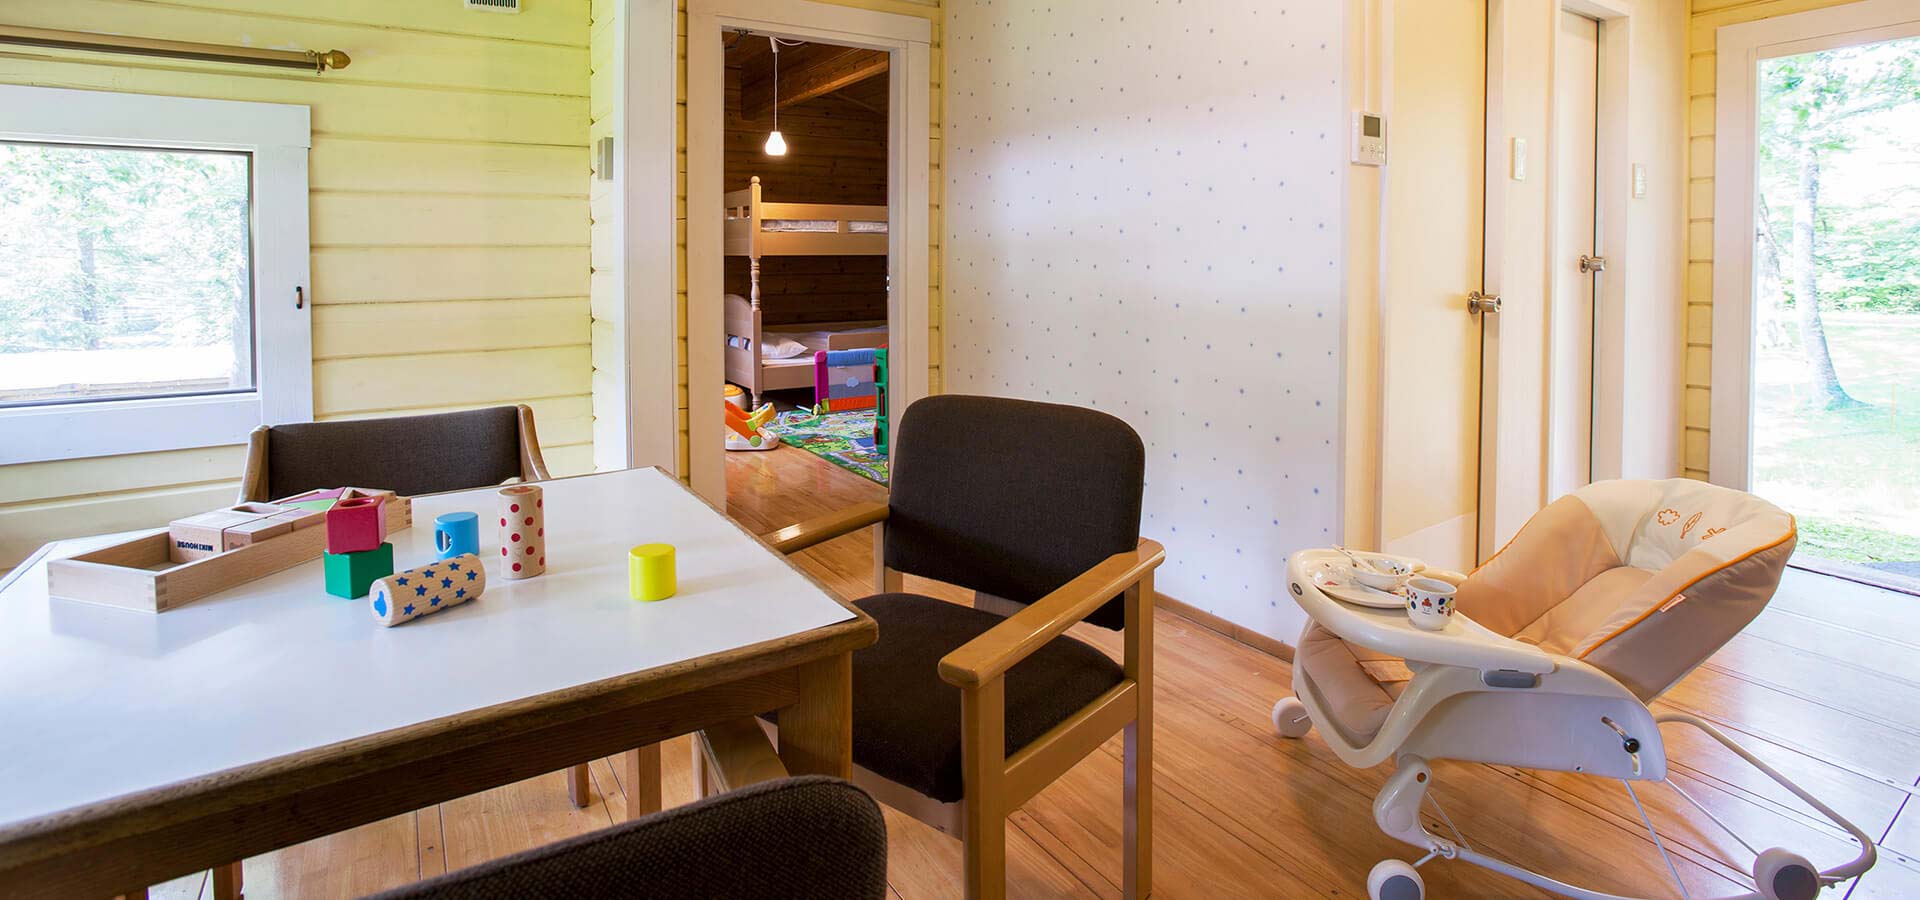 小木屋A 含儿童房间